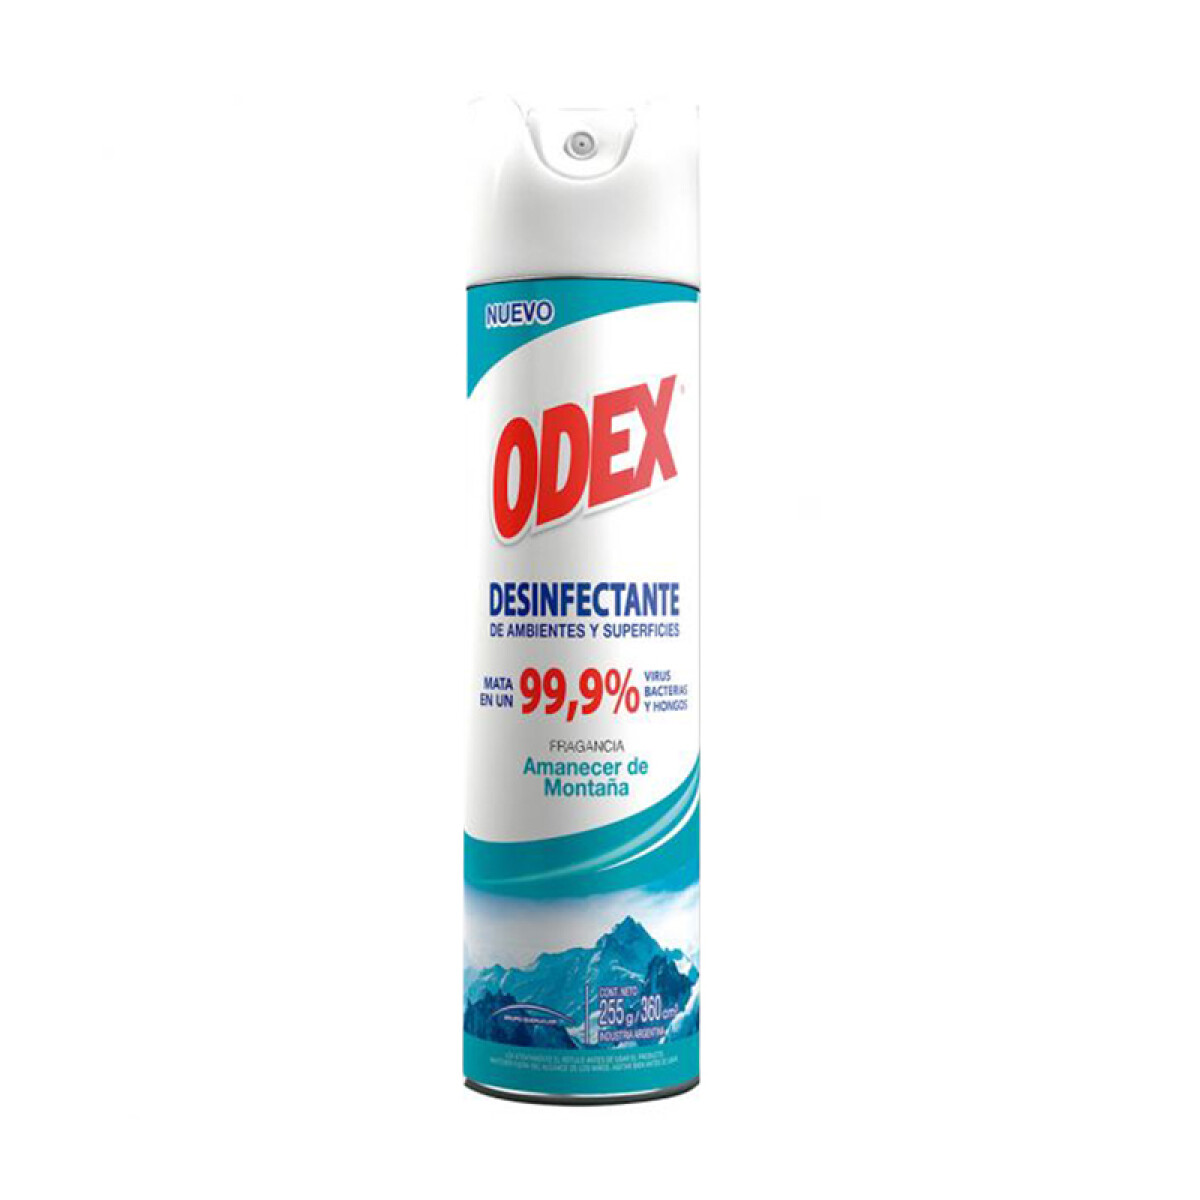 Desinfectante ODEX 360ML Aerosol - Amanecer de montaña 